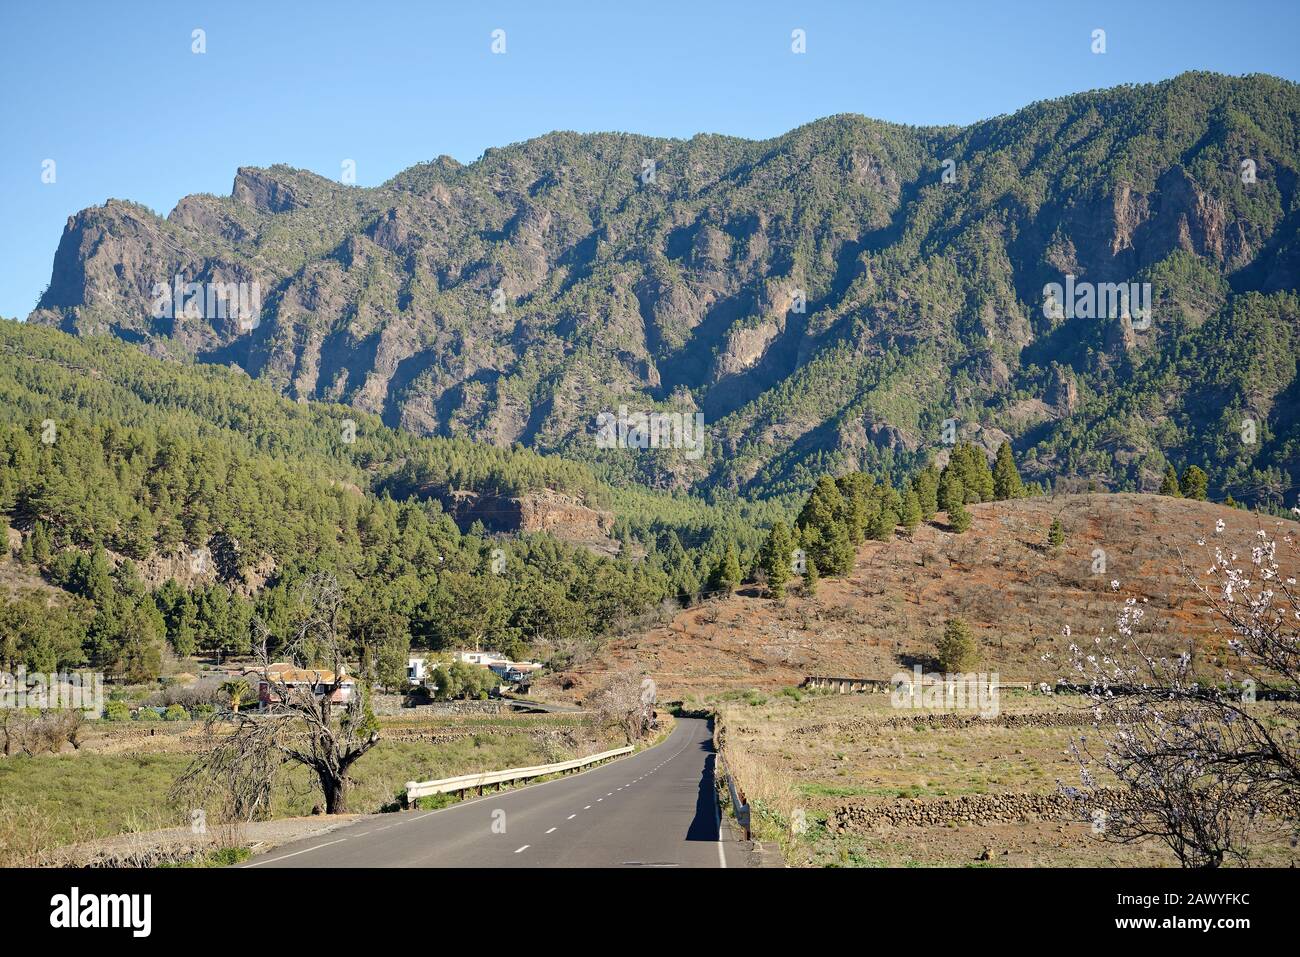 Kiefernwälder und Felsen der Caldera de Taburiente, Insel La Palma, Spanien. Vulkanische Caldera, die jetzt in grünen Kiefernwäldern bedeckt ist. Stockfoto